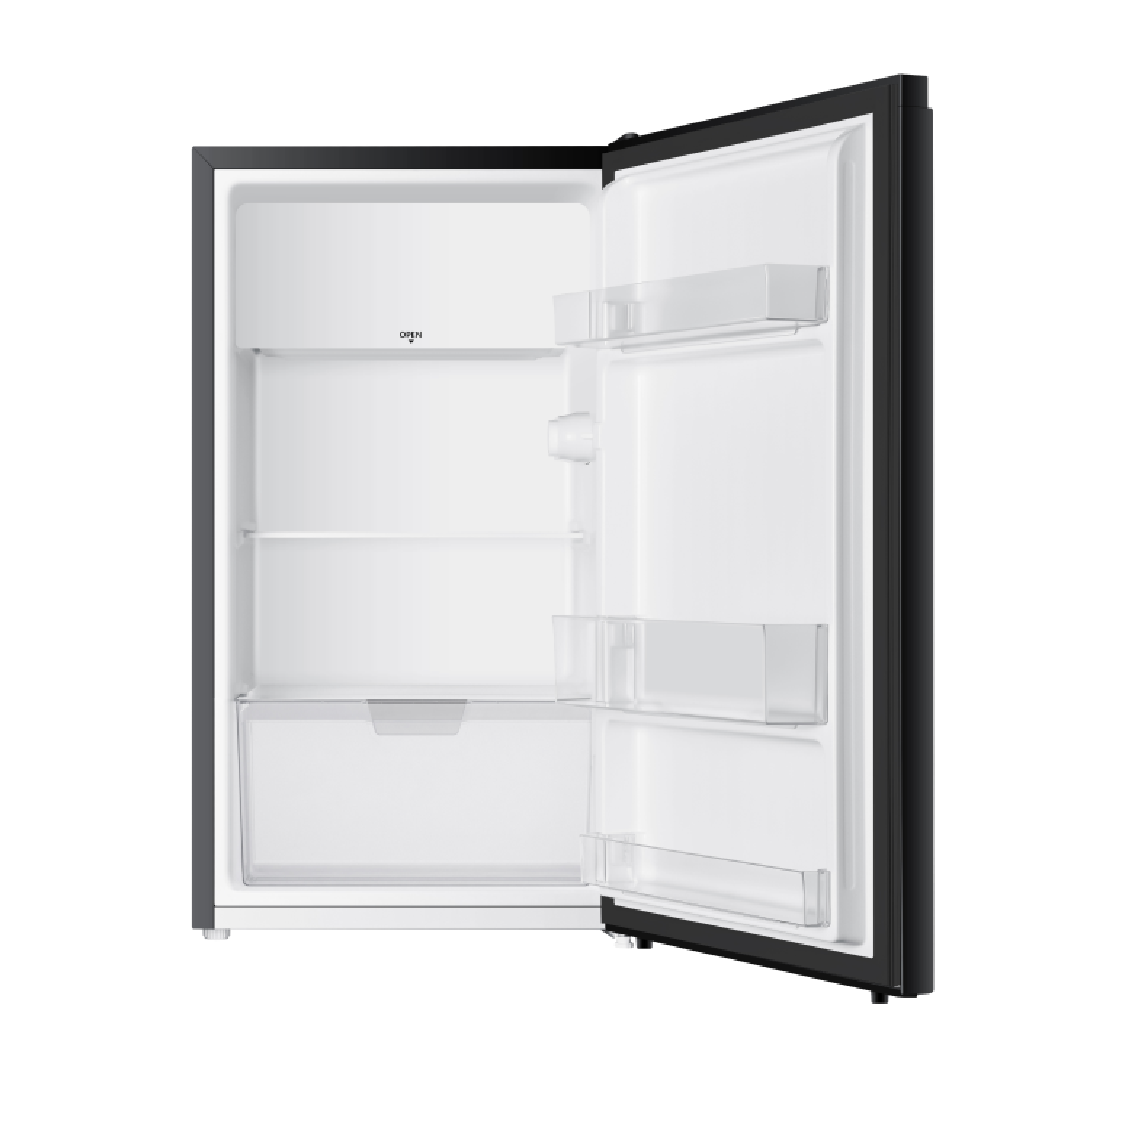 [GIAO HÀNG XUYÊN TẾT]Tủ lạnh Electrolux 94 Lít EUM0930BD-VN Mới 2022